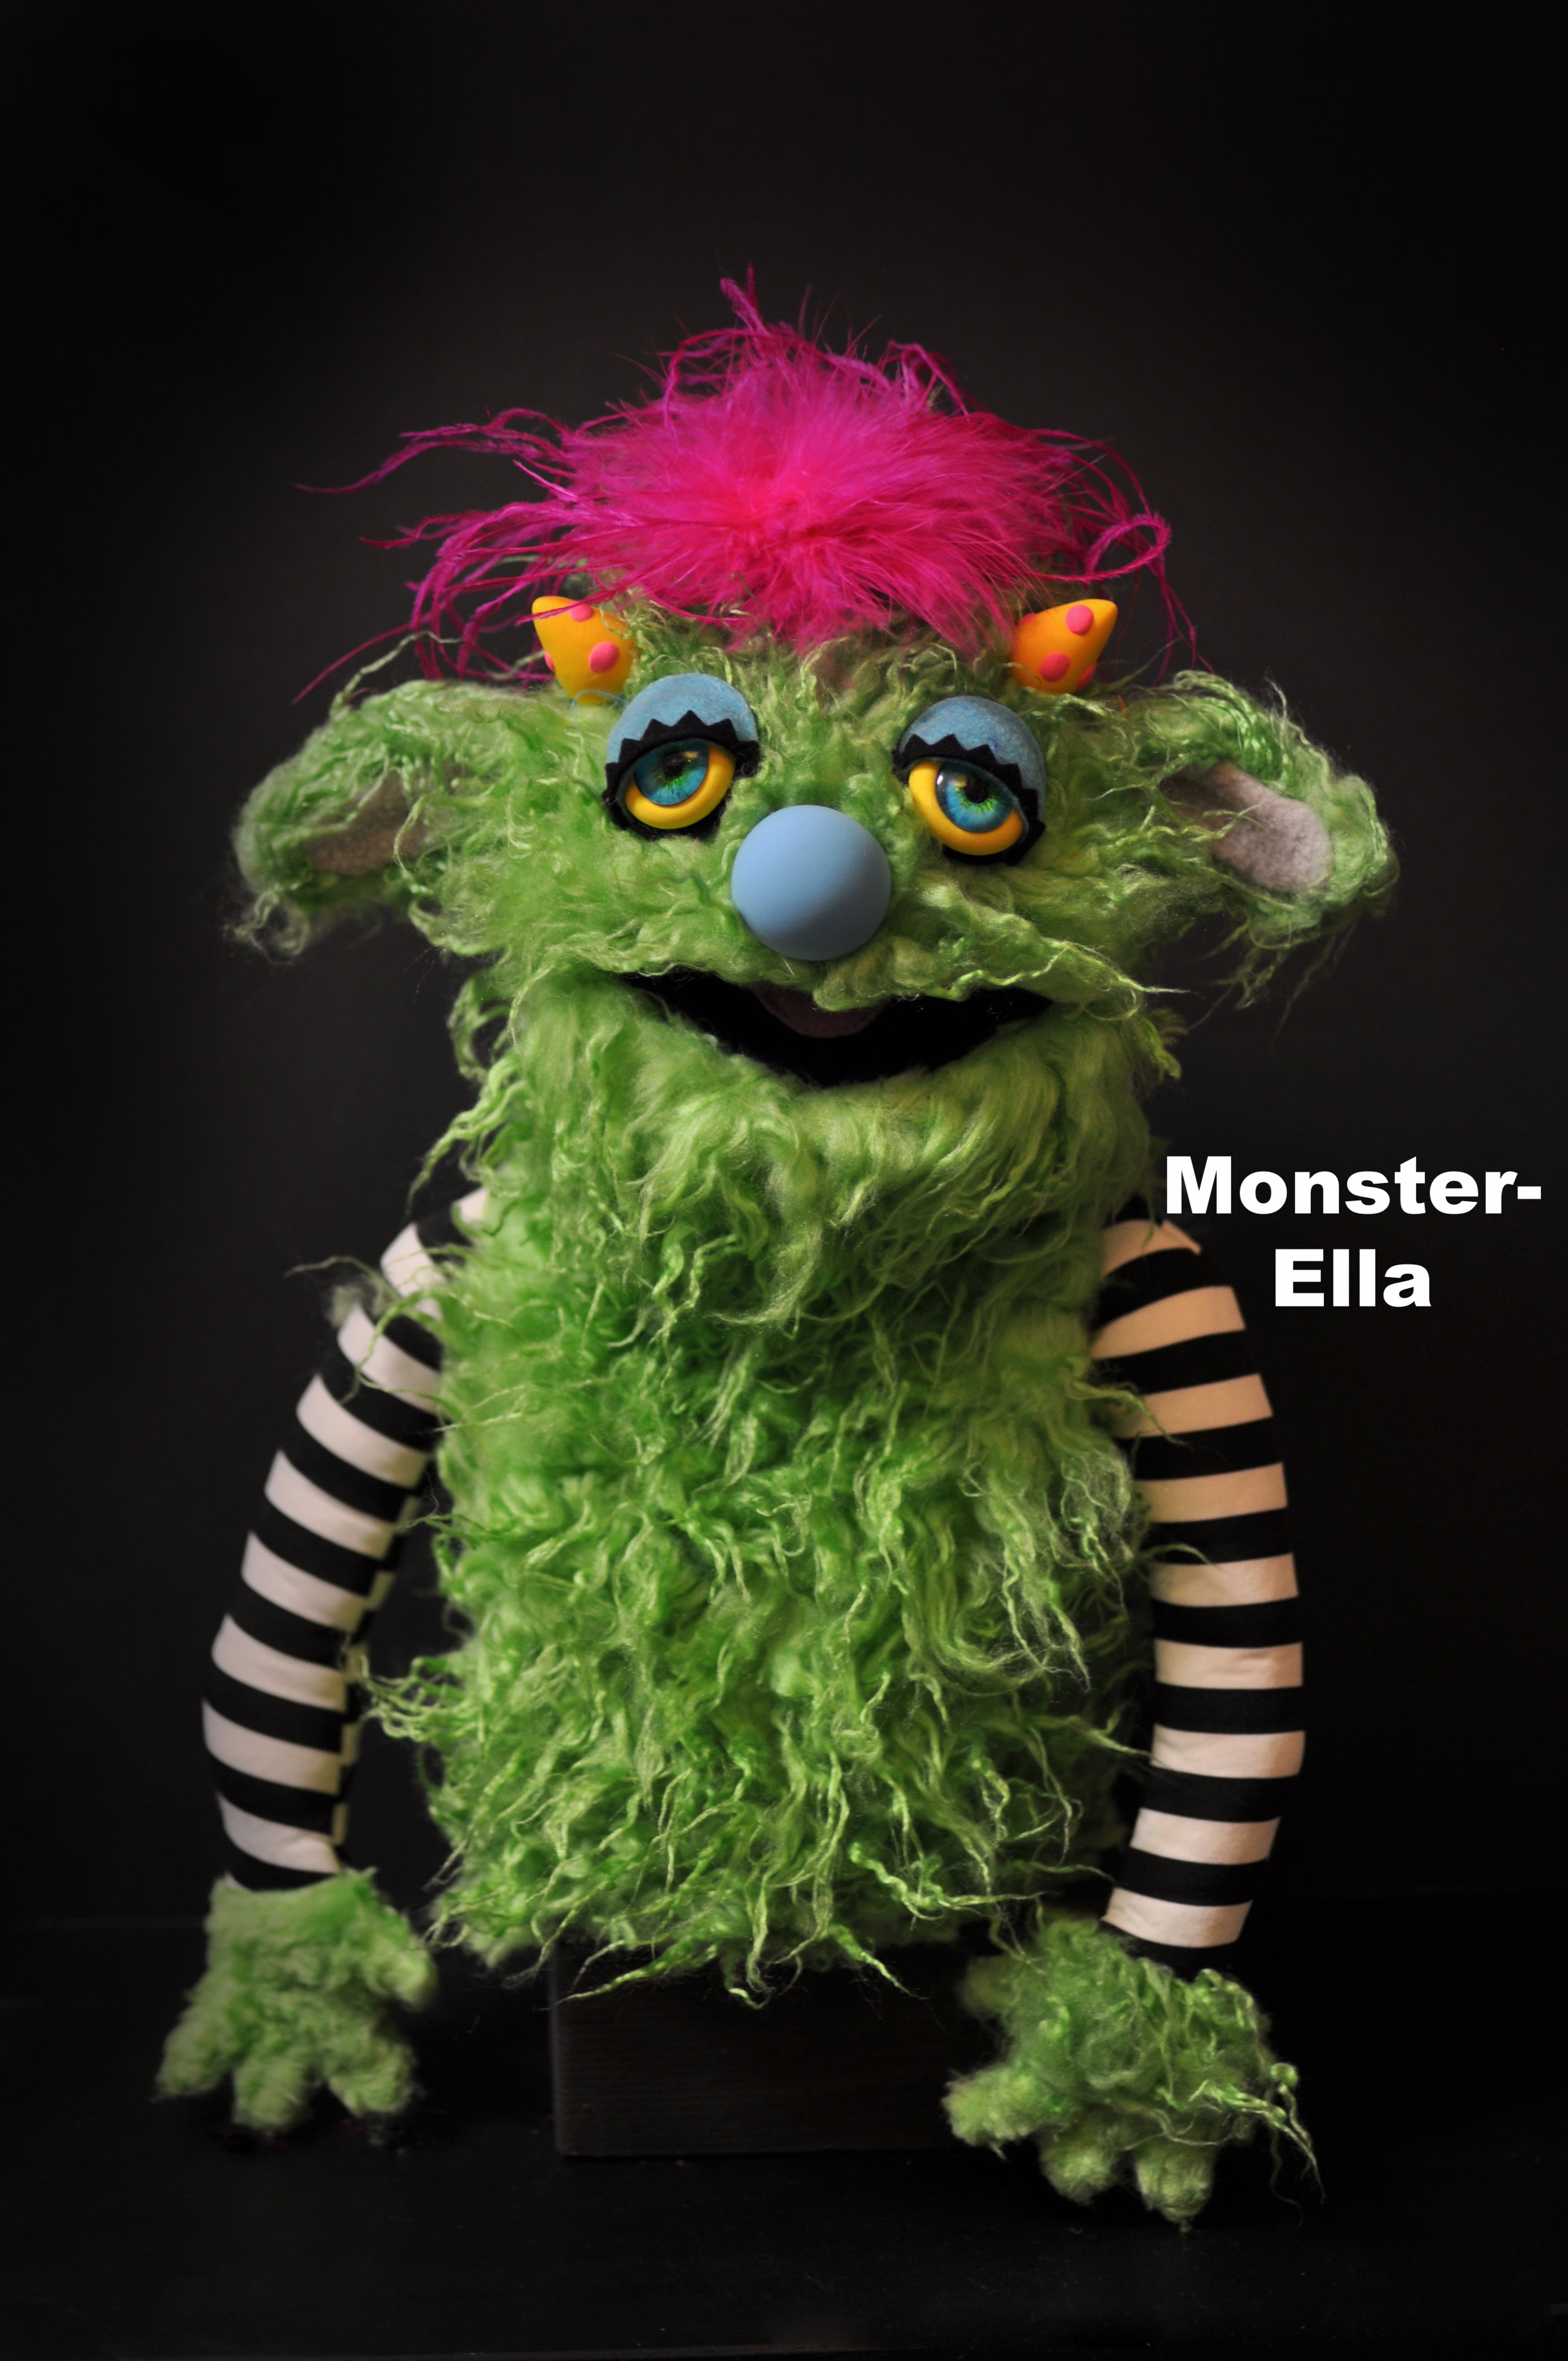 Monster-Ella.jpg